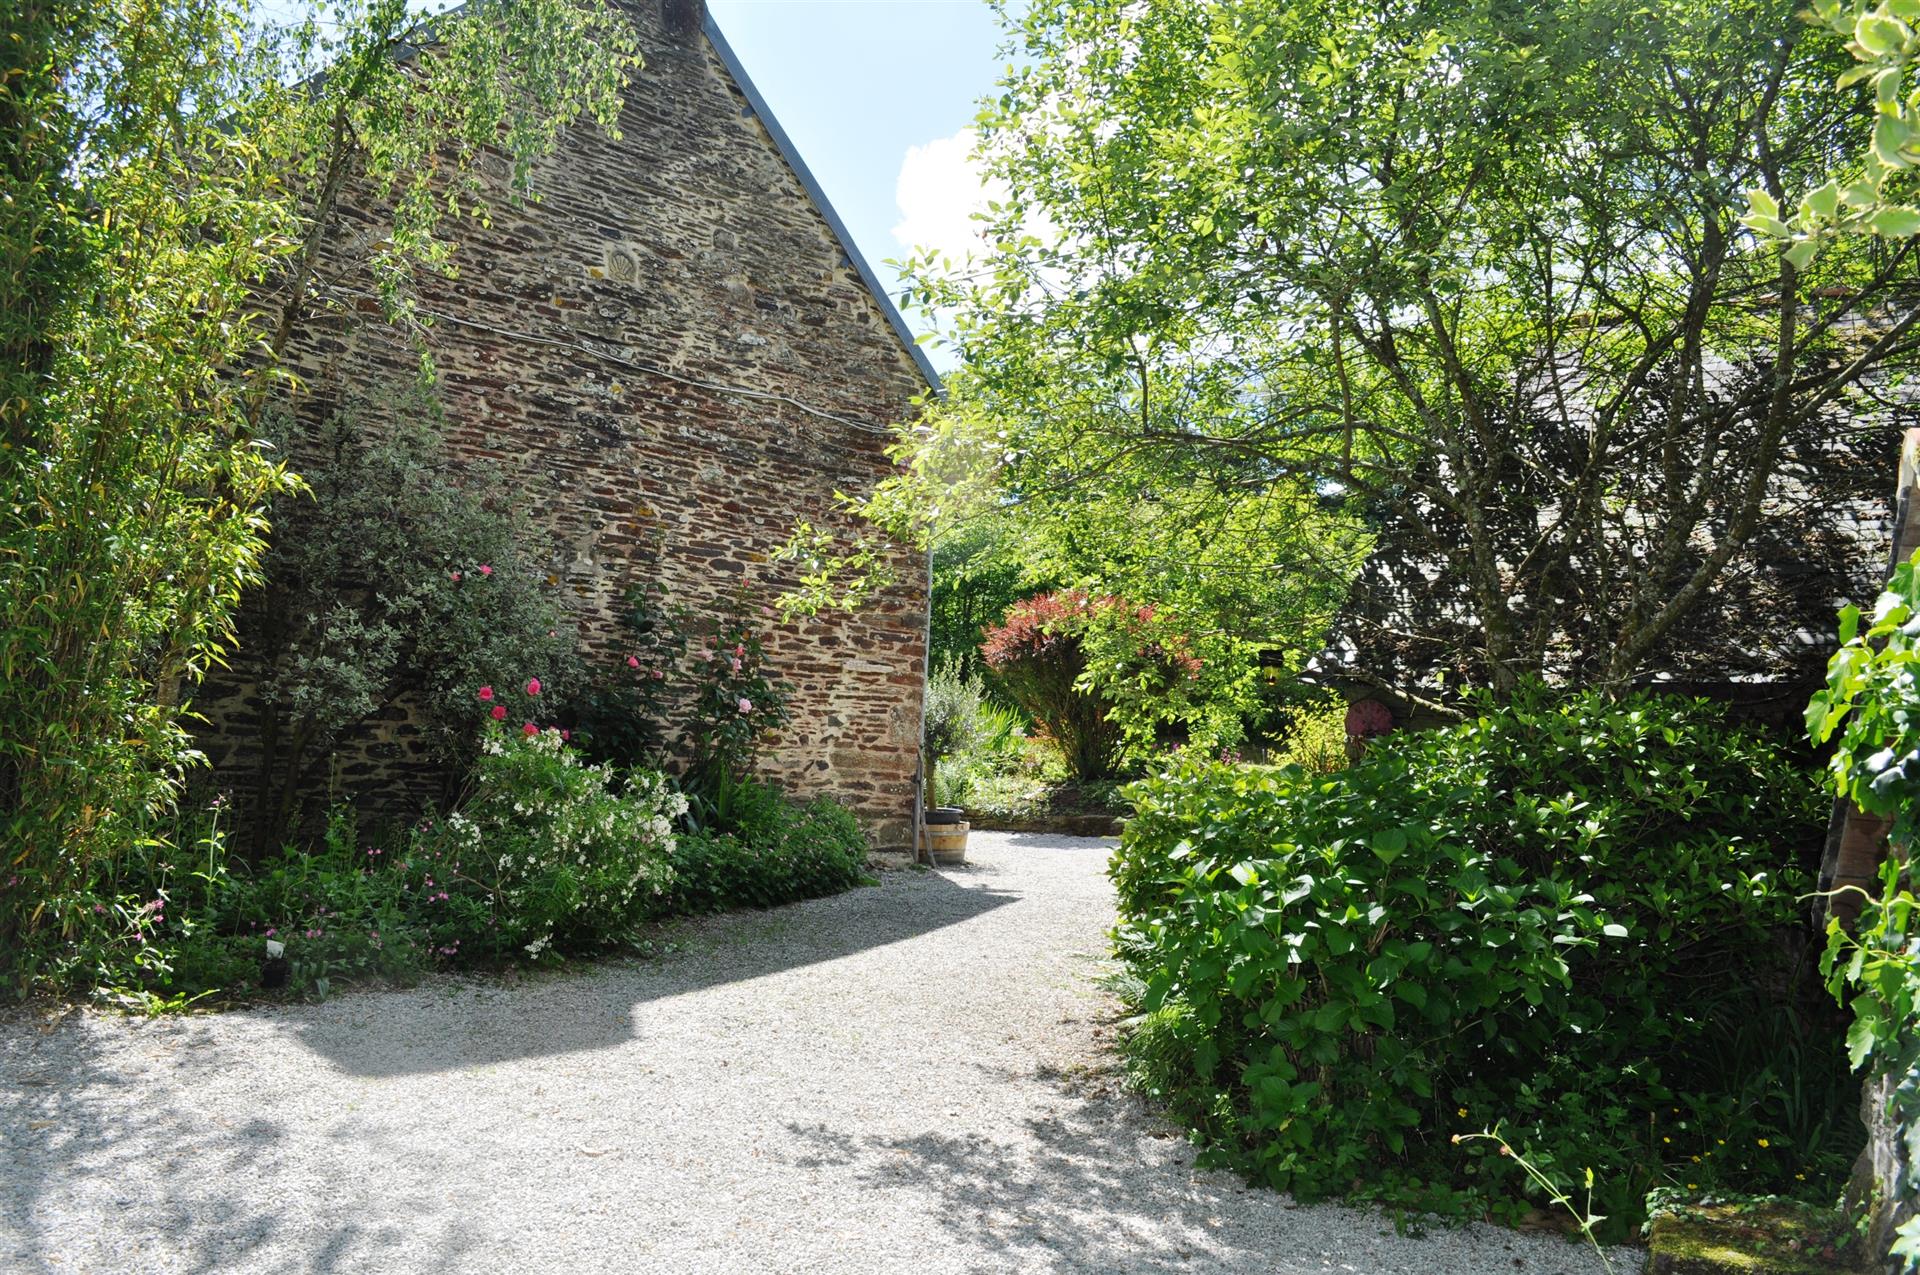 Casa de fazenda Breton renovada à beira do rio